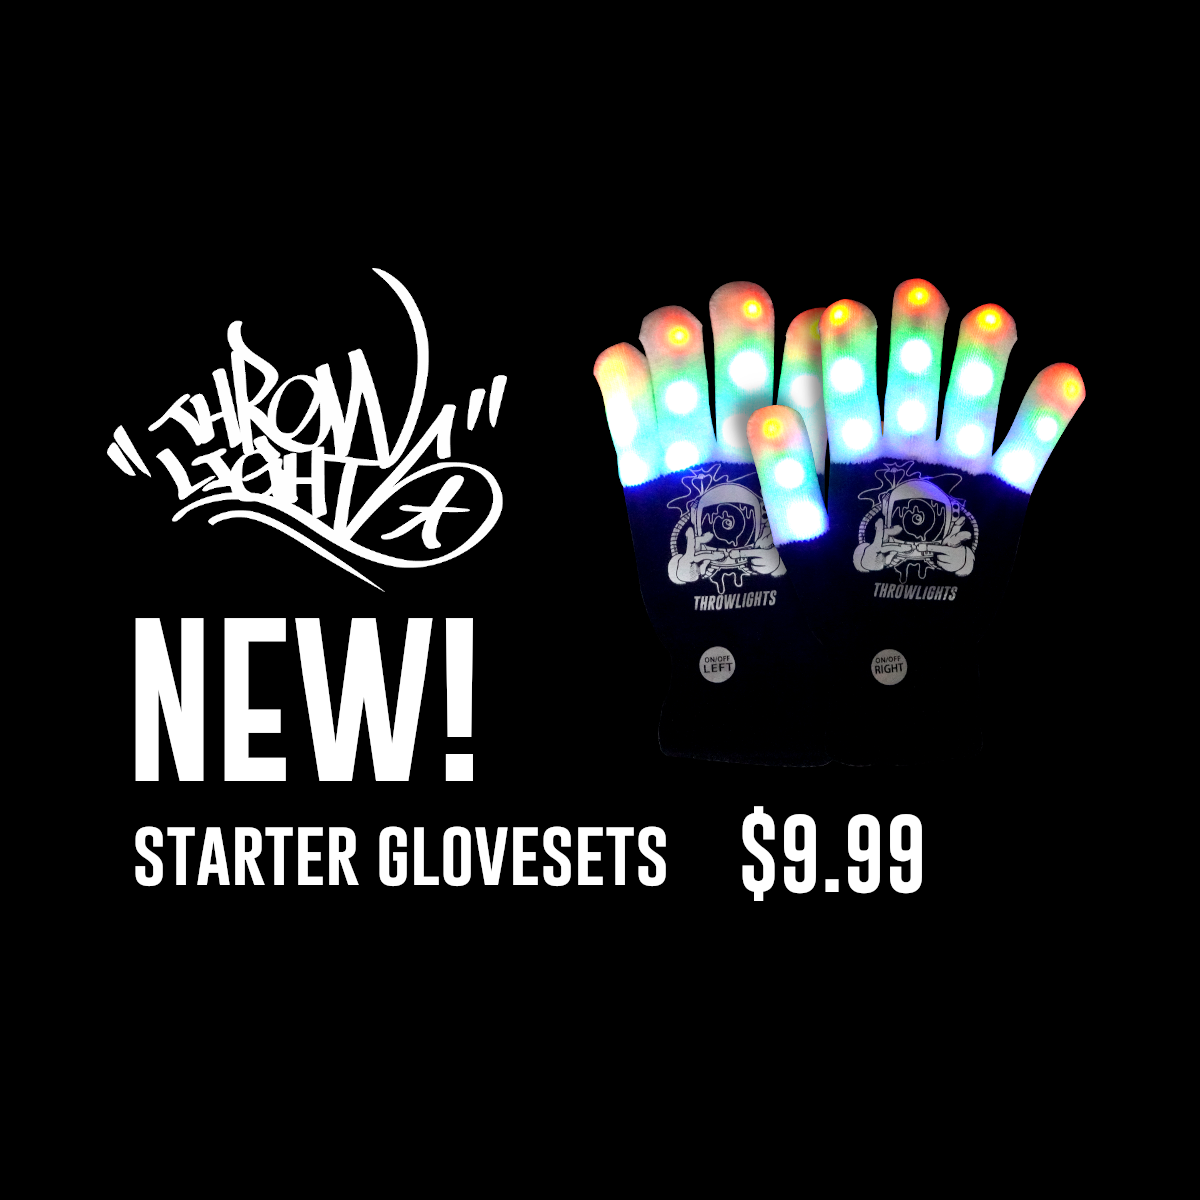 NEW: Starter Glovesets, only $9.99